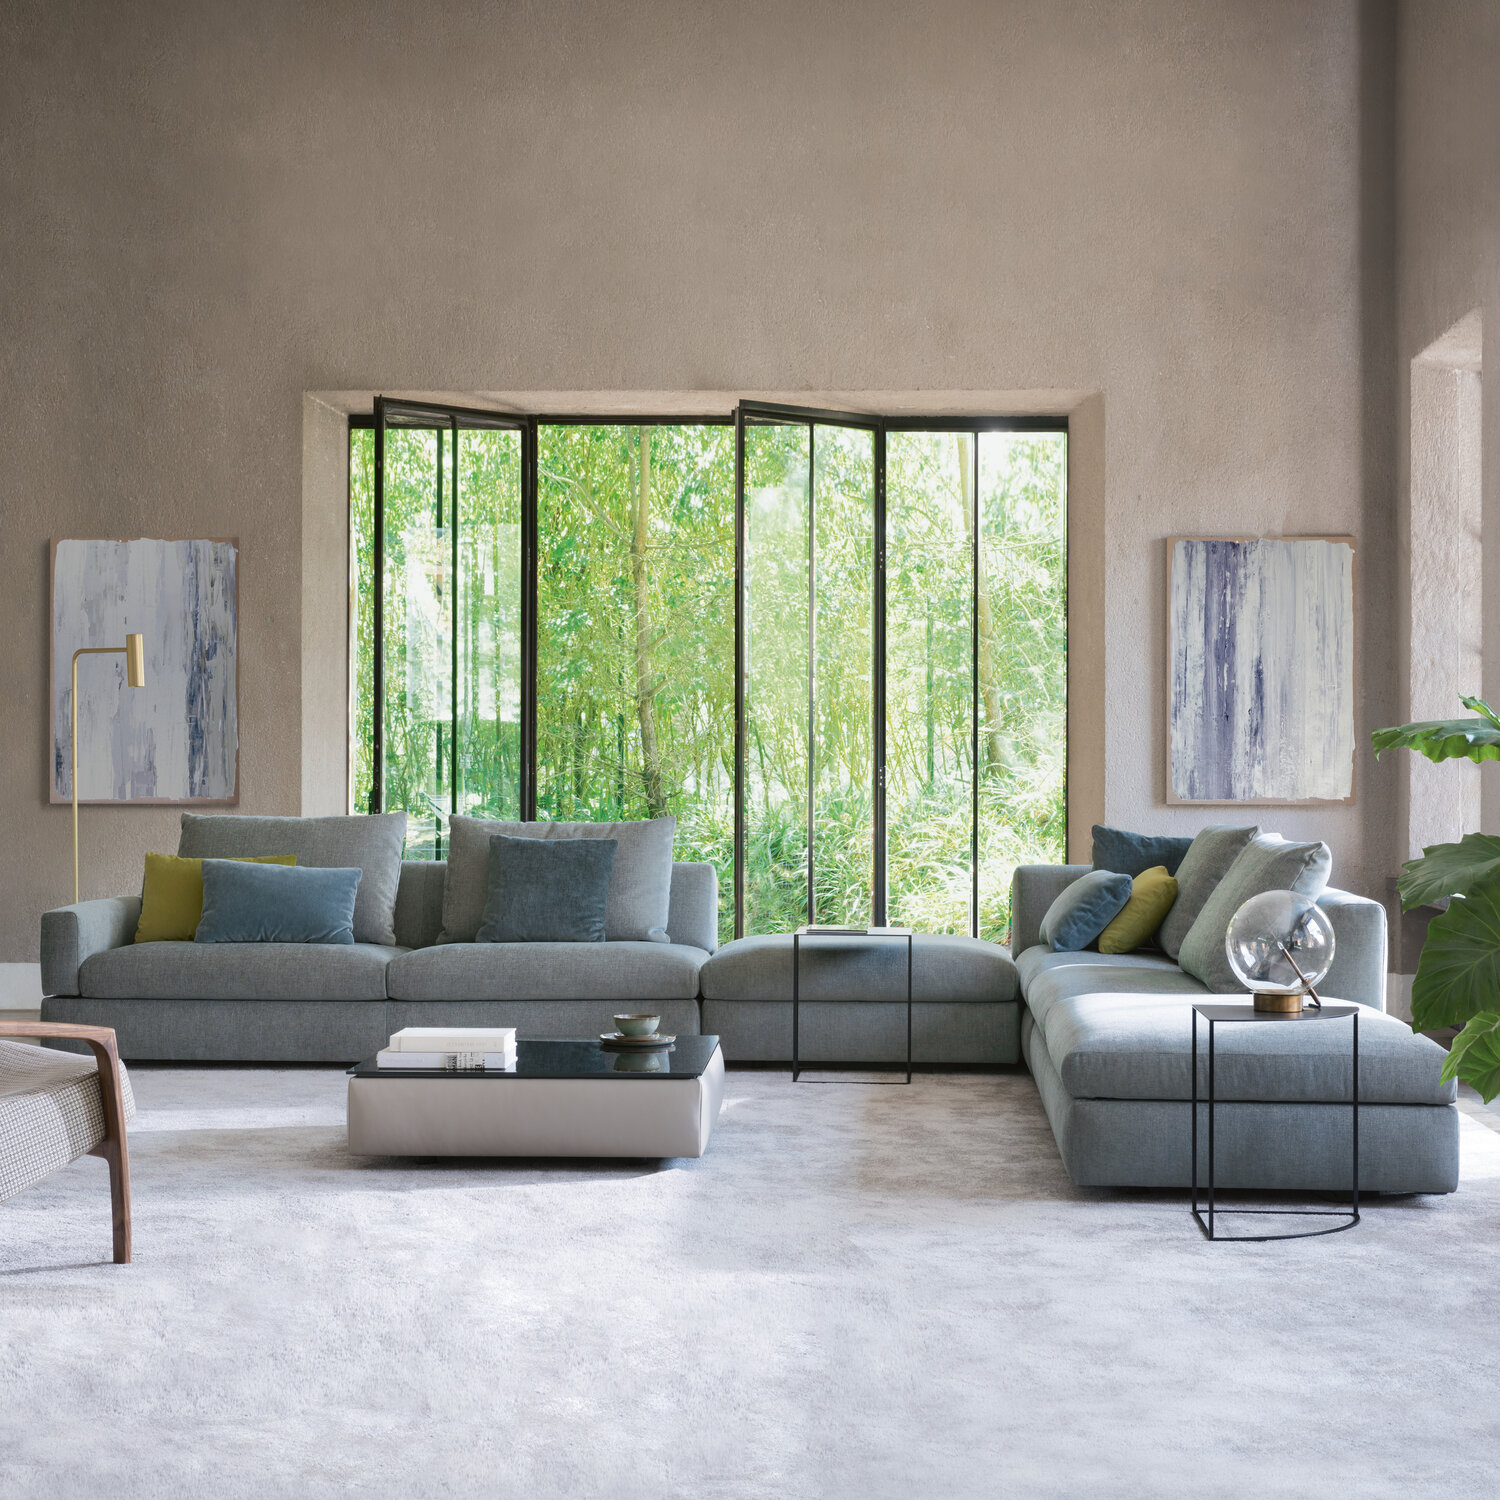 Offer Gorgelen mild Comfort en design zetels — Loncin Interieur | A Beautiful Home